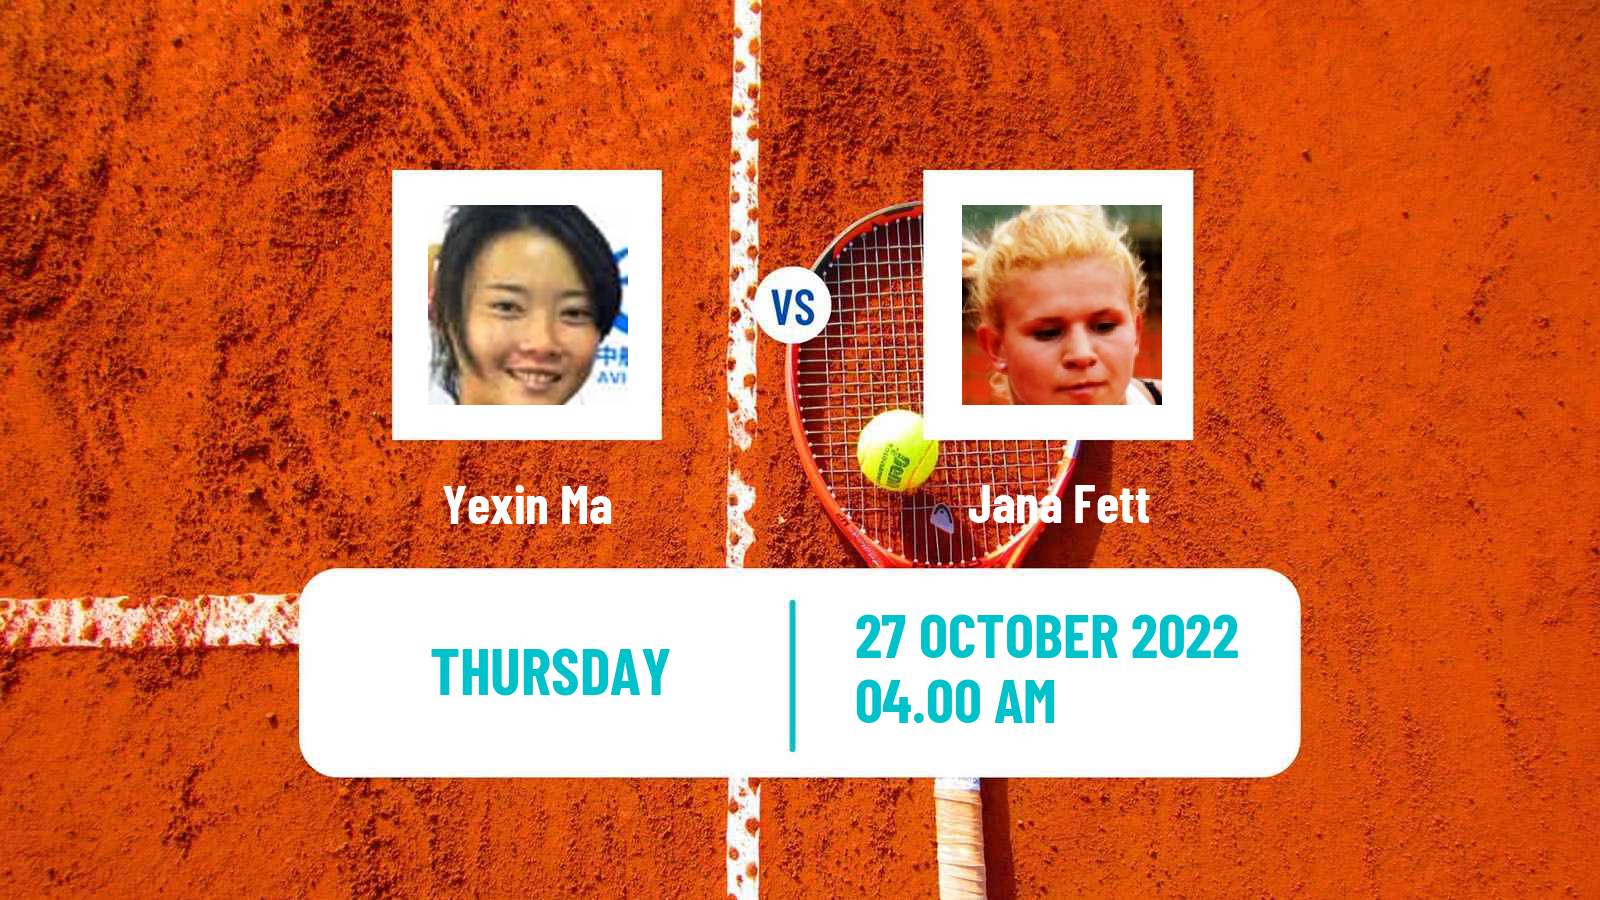 Tennis ITF Tournaments Yexin Ma - Jana Fett